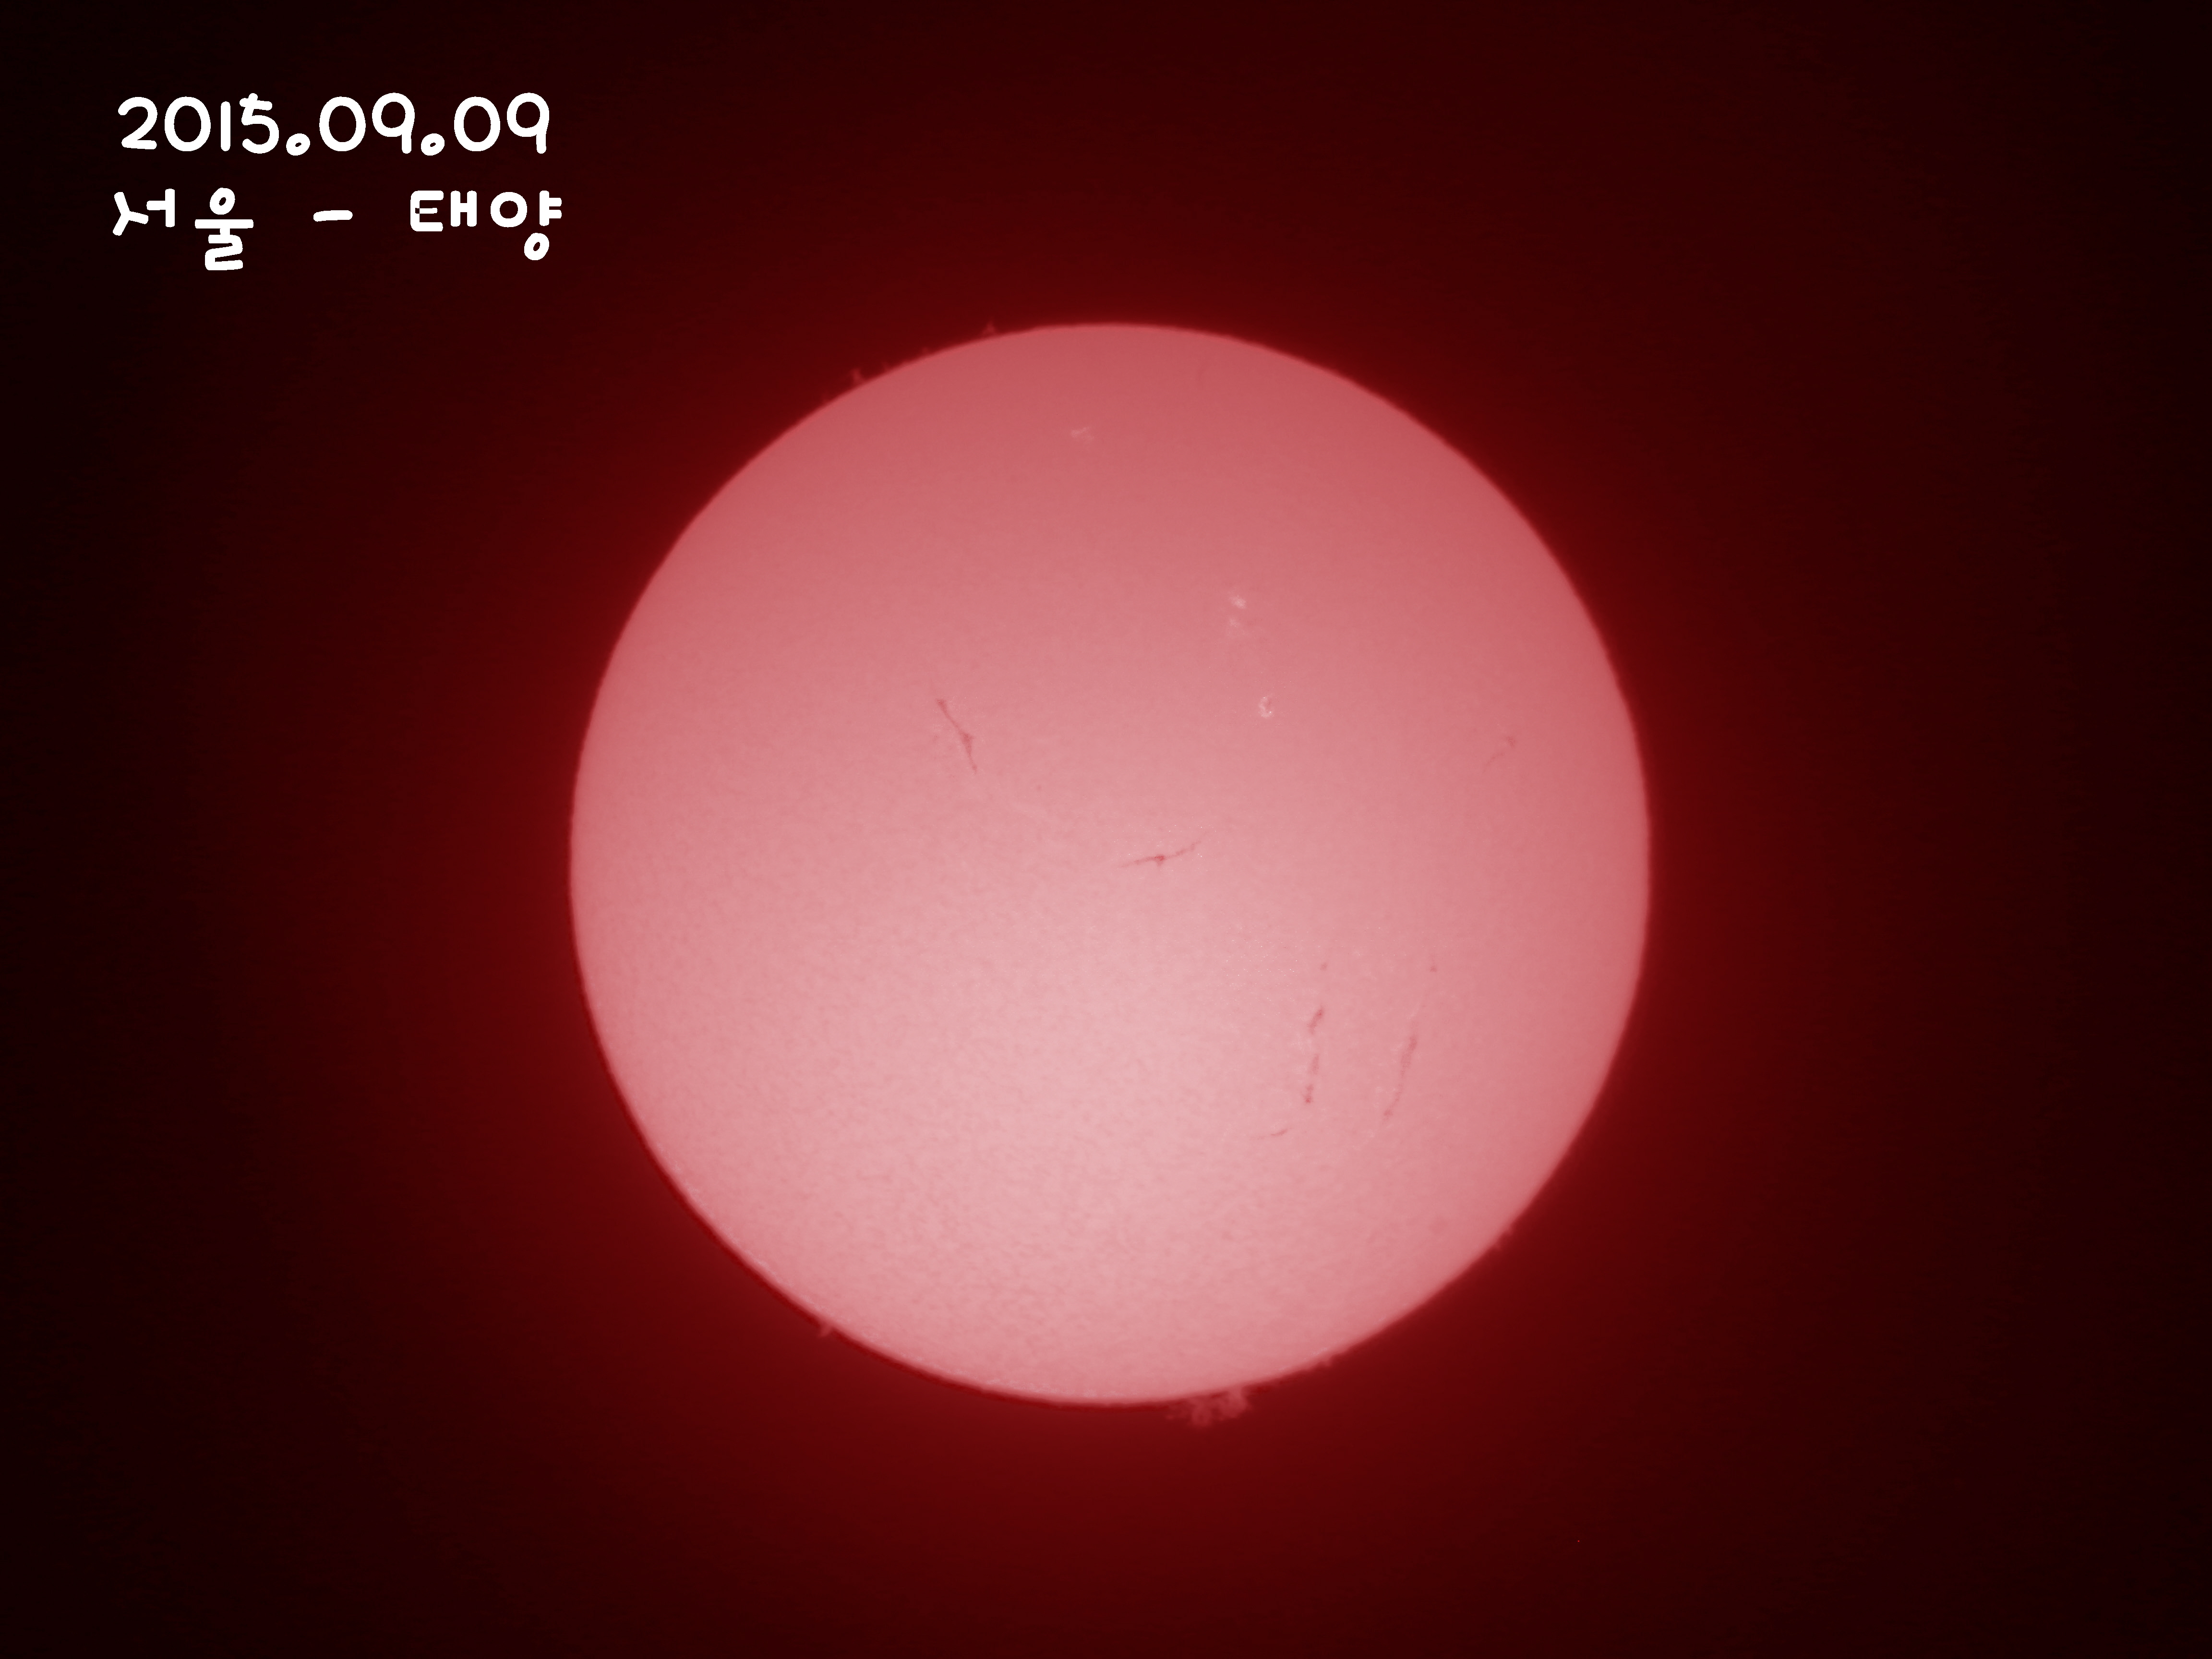 2015.09.09 태양 - 이름.jpg